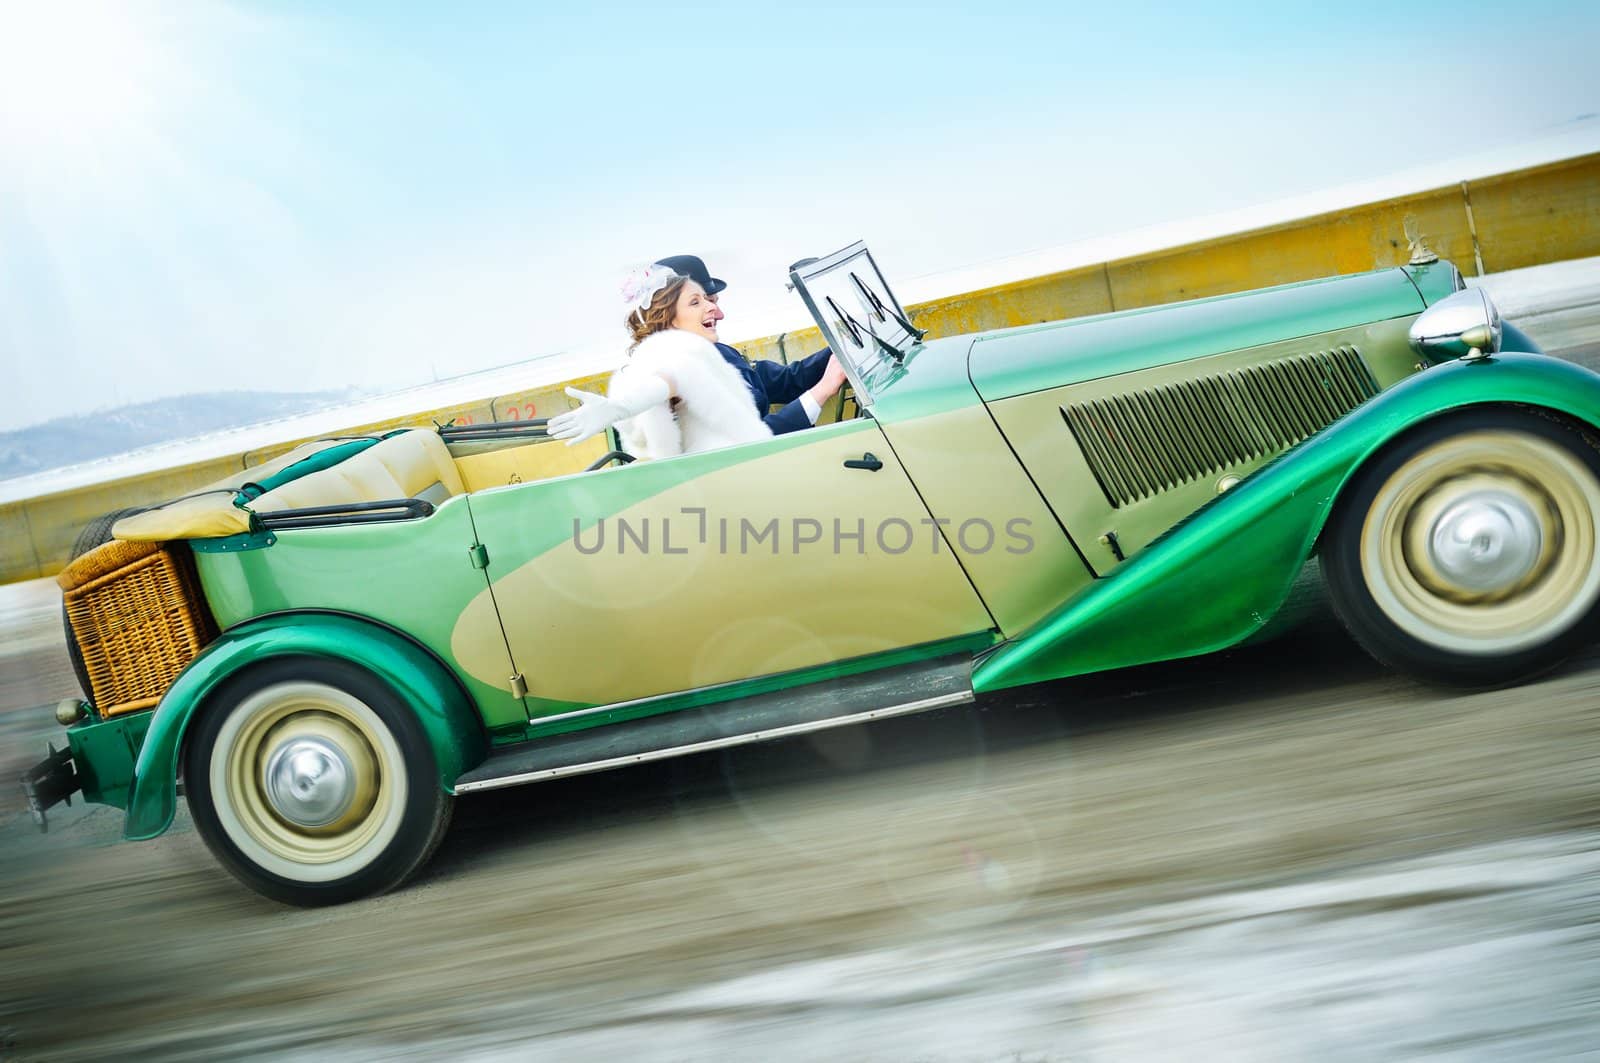 Newlyweds In Wedding Car by maxoliki